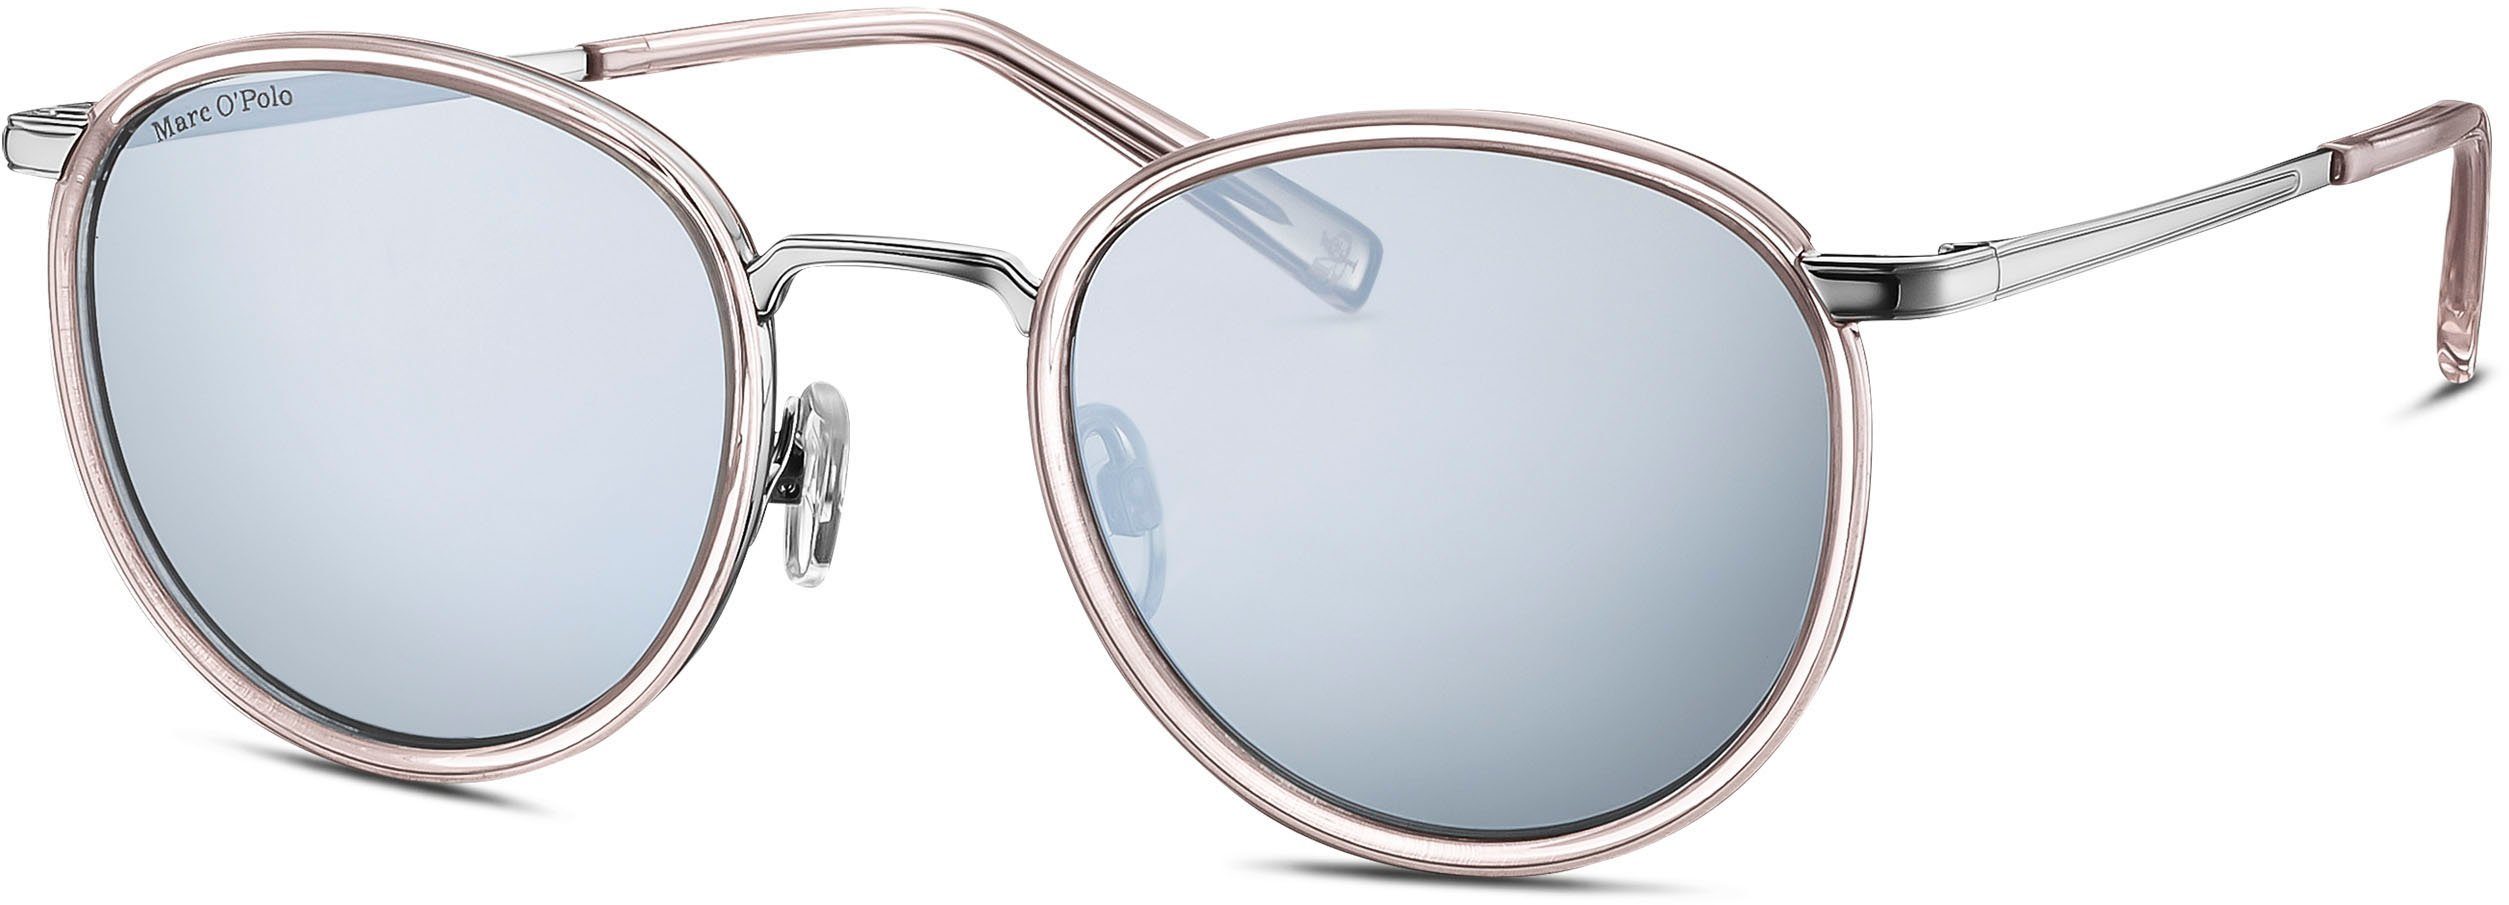 Verkaufsstand Marc O'Polo Sonnenbrille Modell 505105 hellbraun Panto-Form